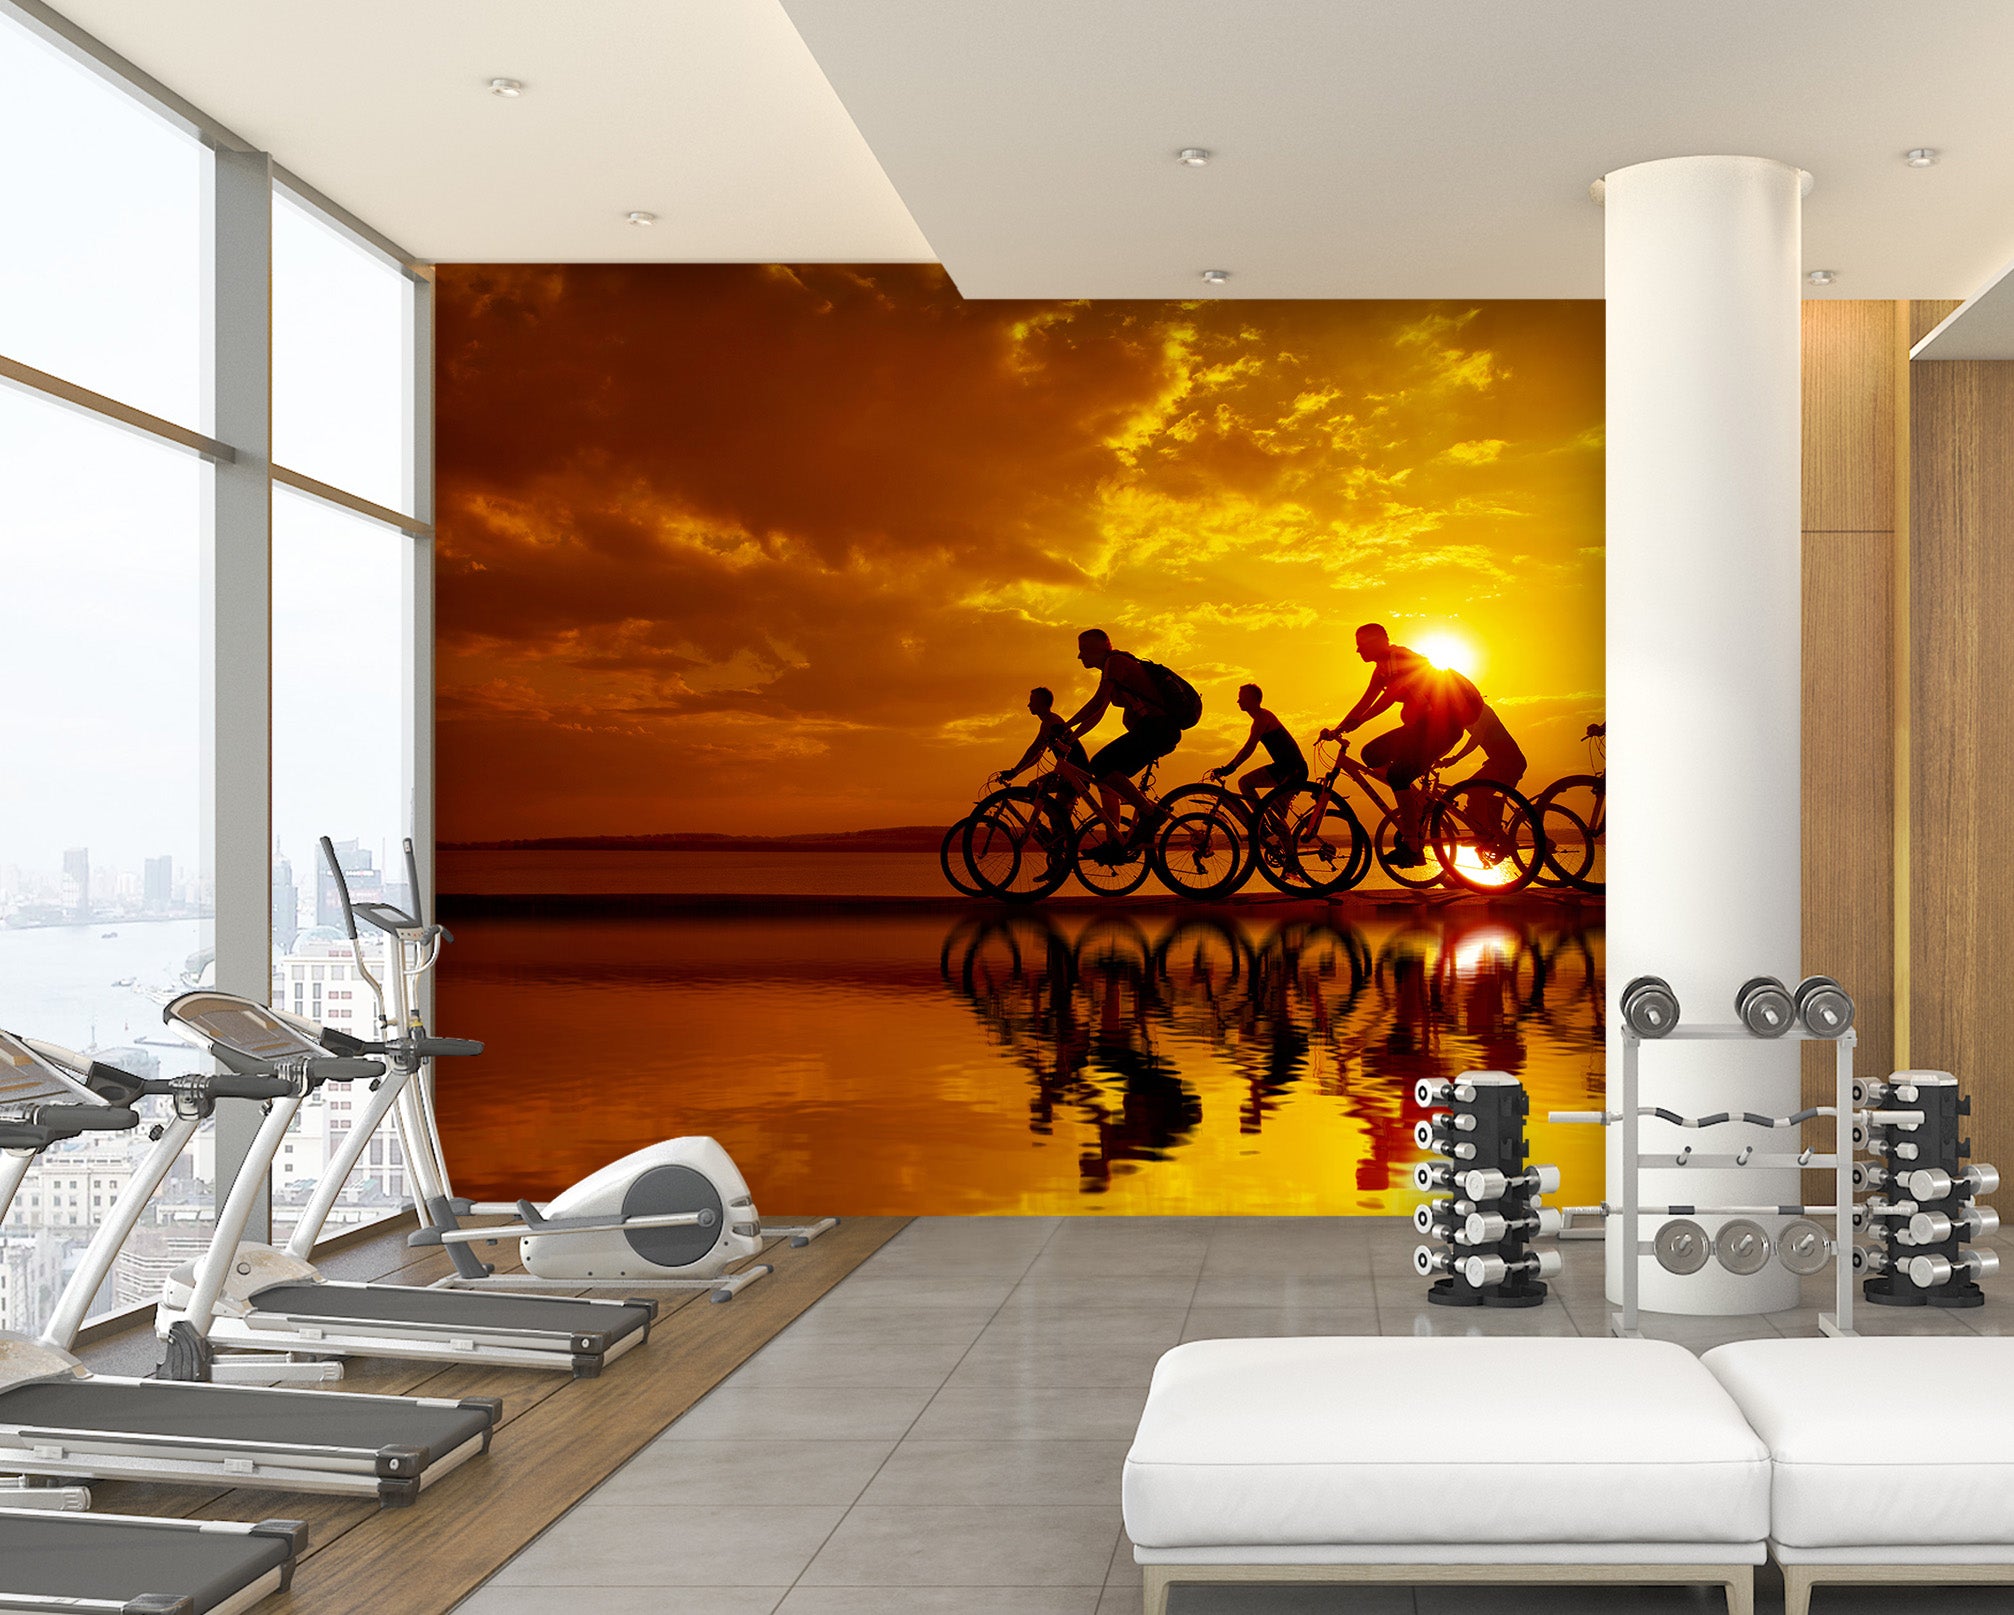 3D Cycling 028 Wall Murals Wallpaper AJ Wallpaper 2 